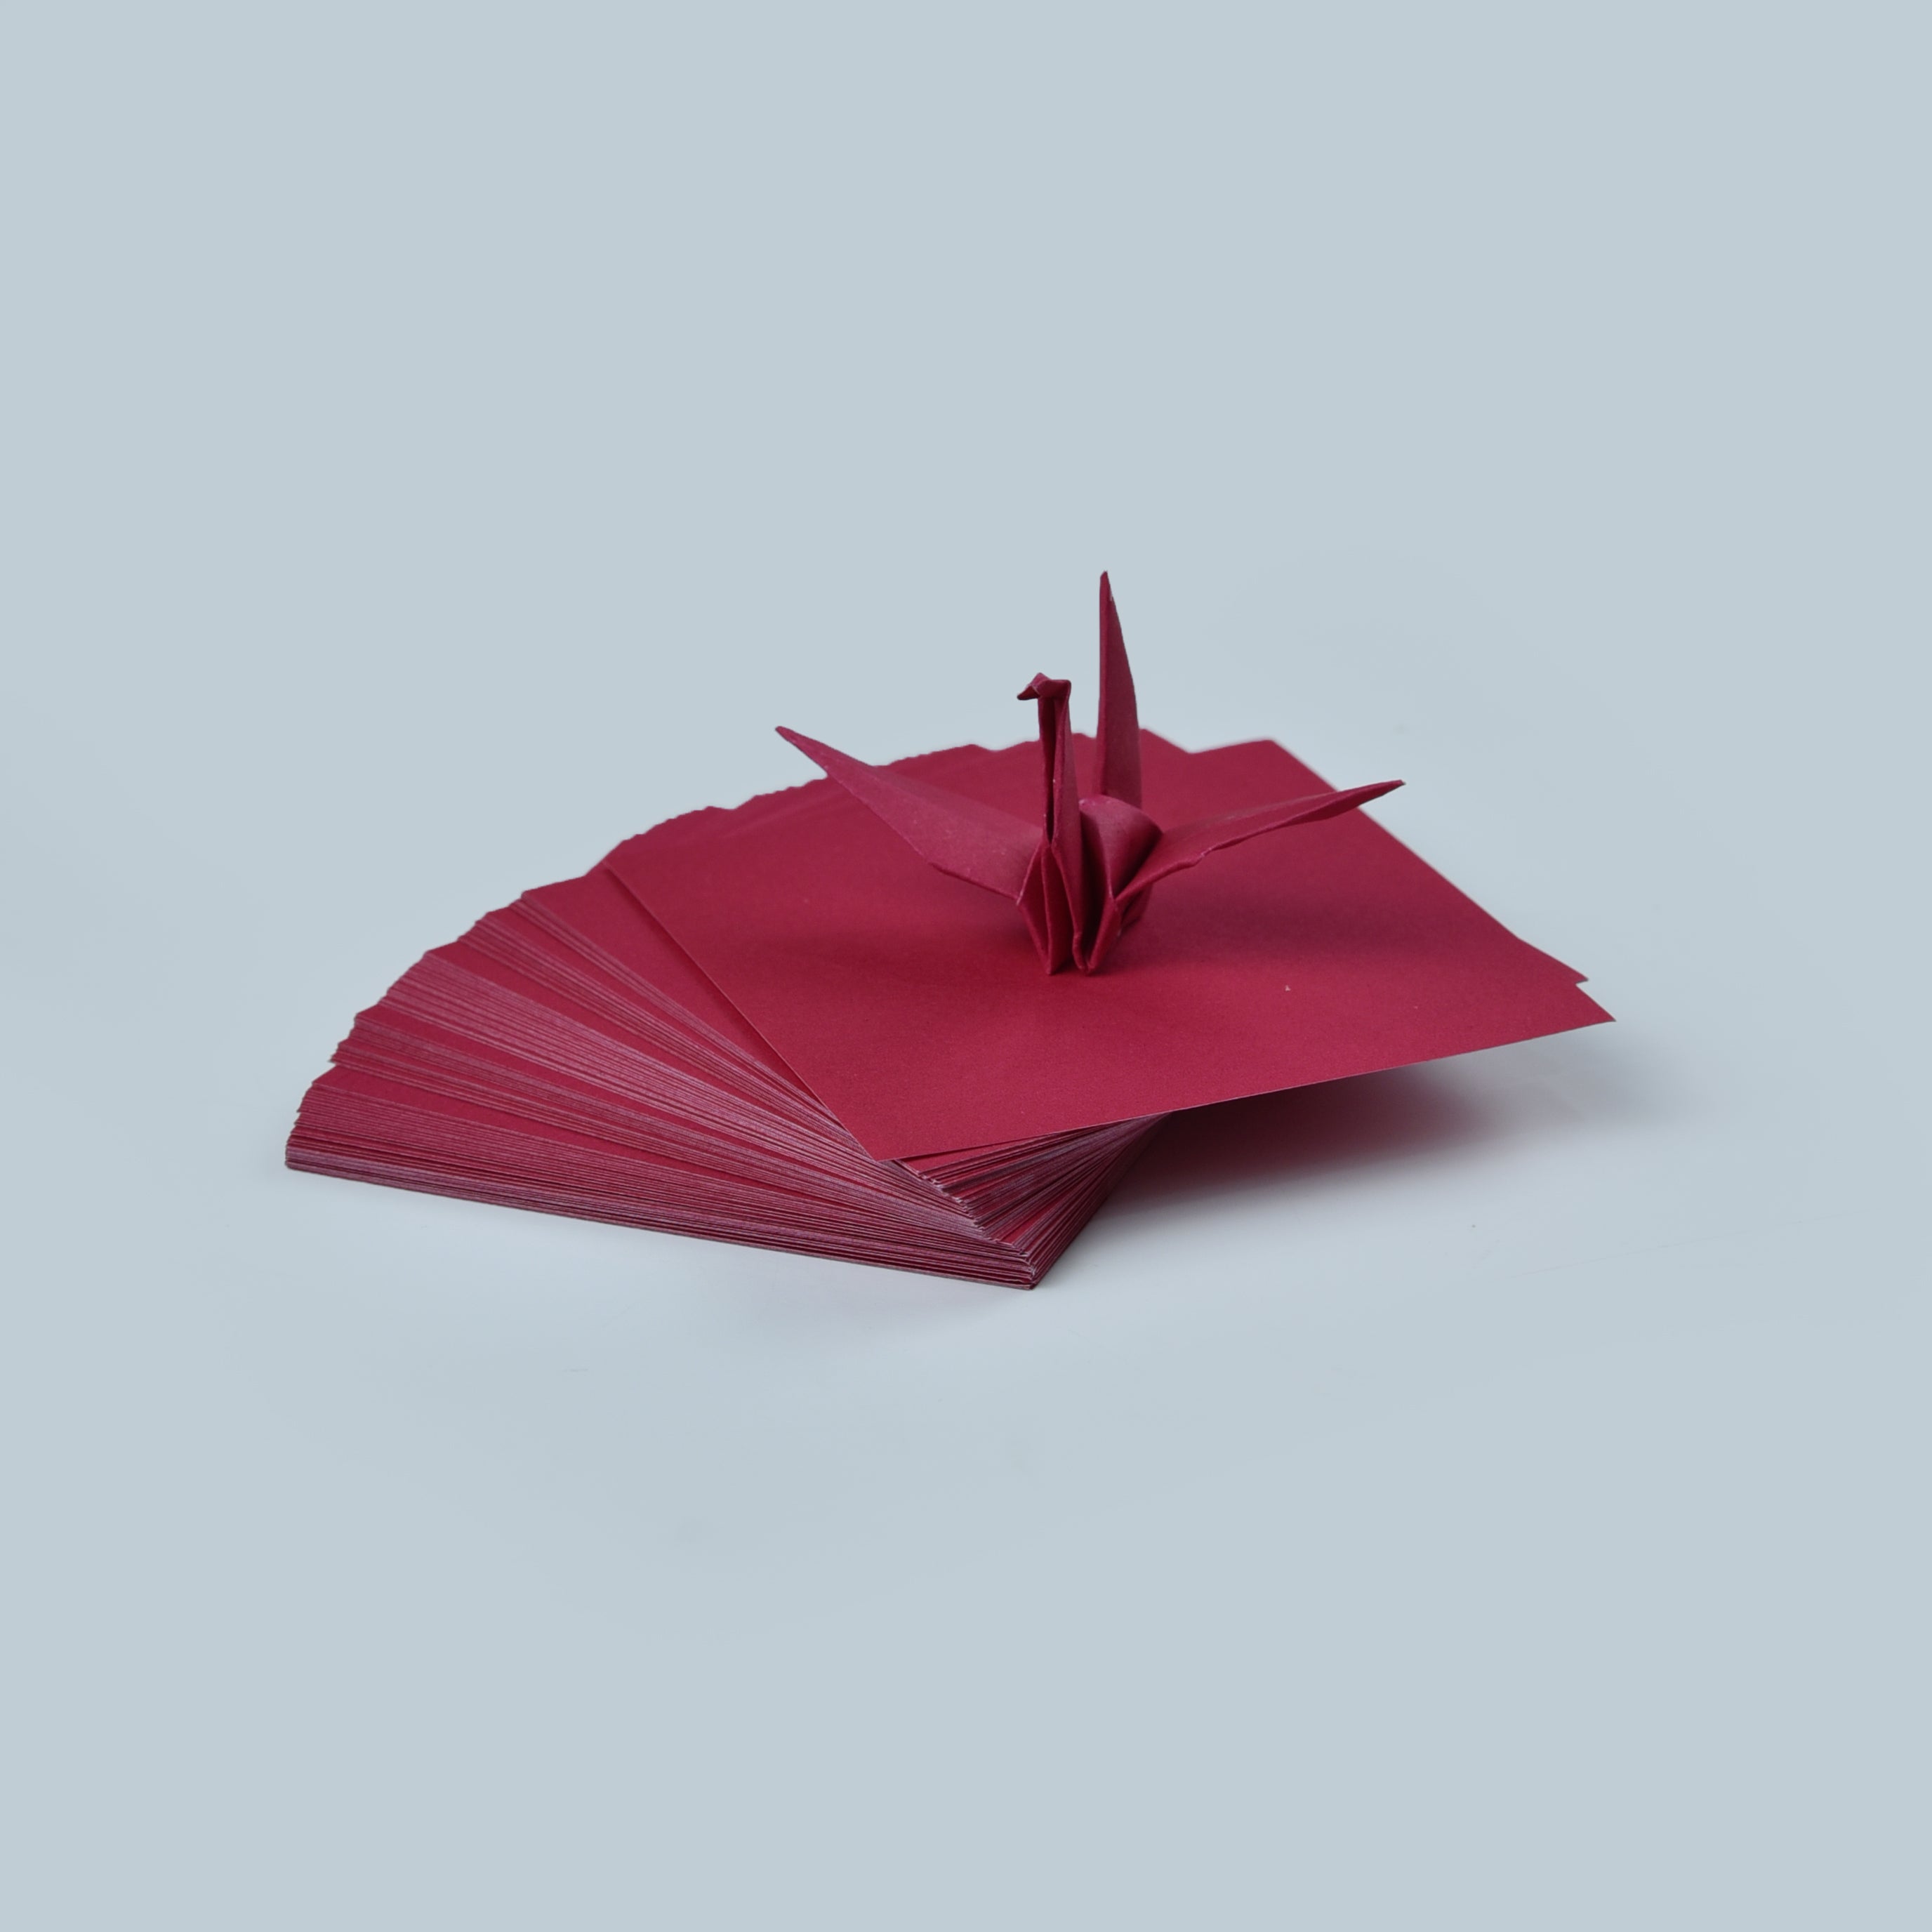 100 fogli di carta origami - 3x3 pollici - Confezione di carta quadrata per piegare, gru origami e decorazioni - S15